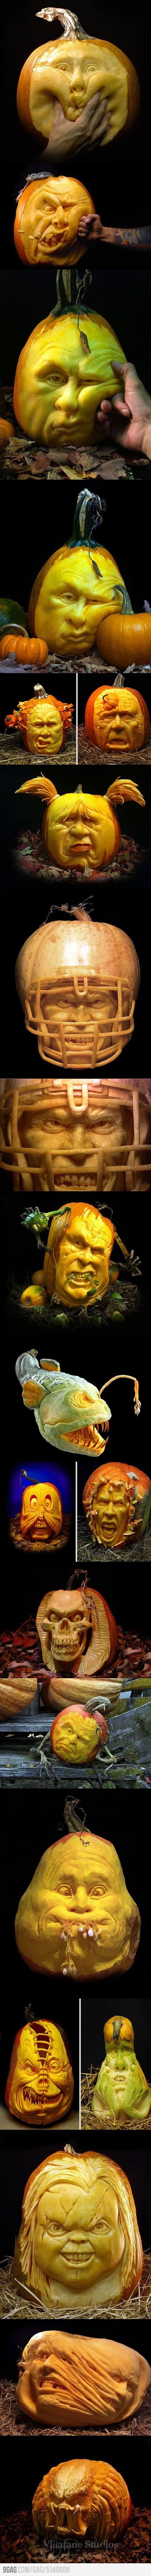 Brilliant Pumpkin Carving